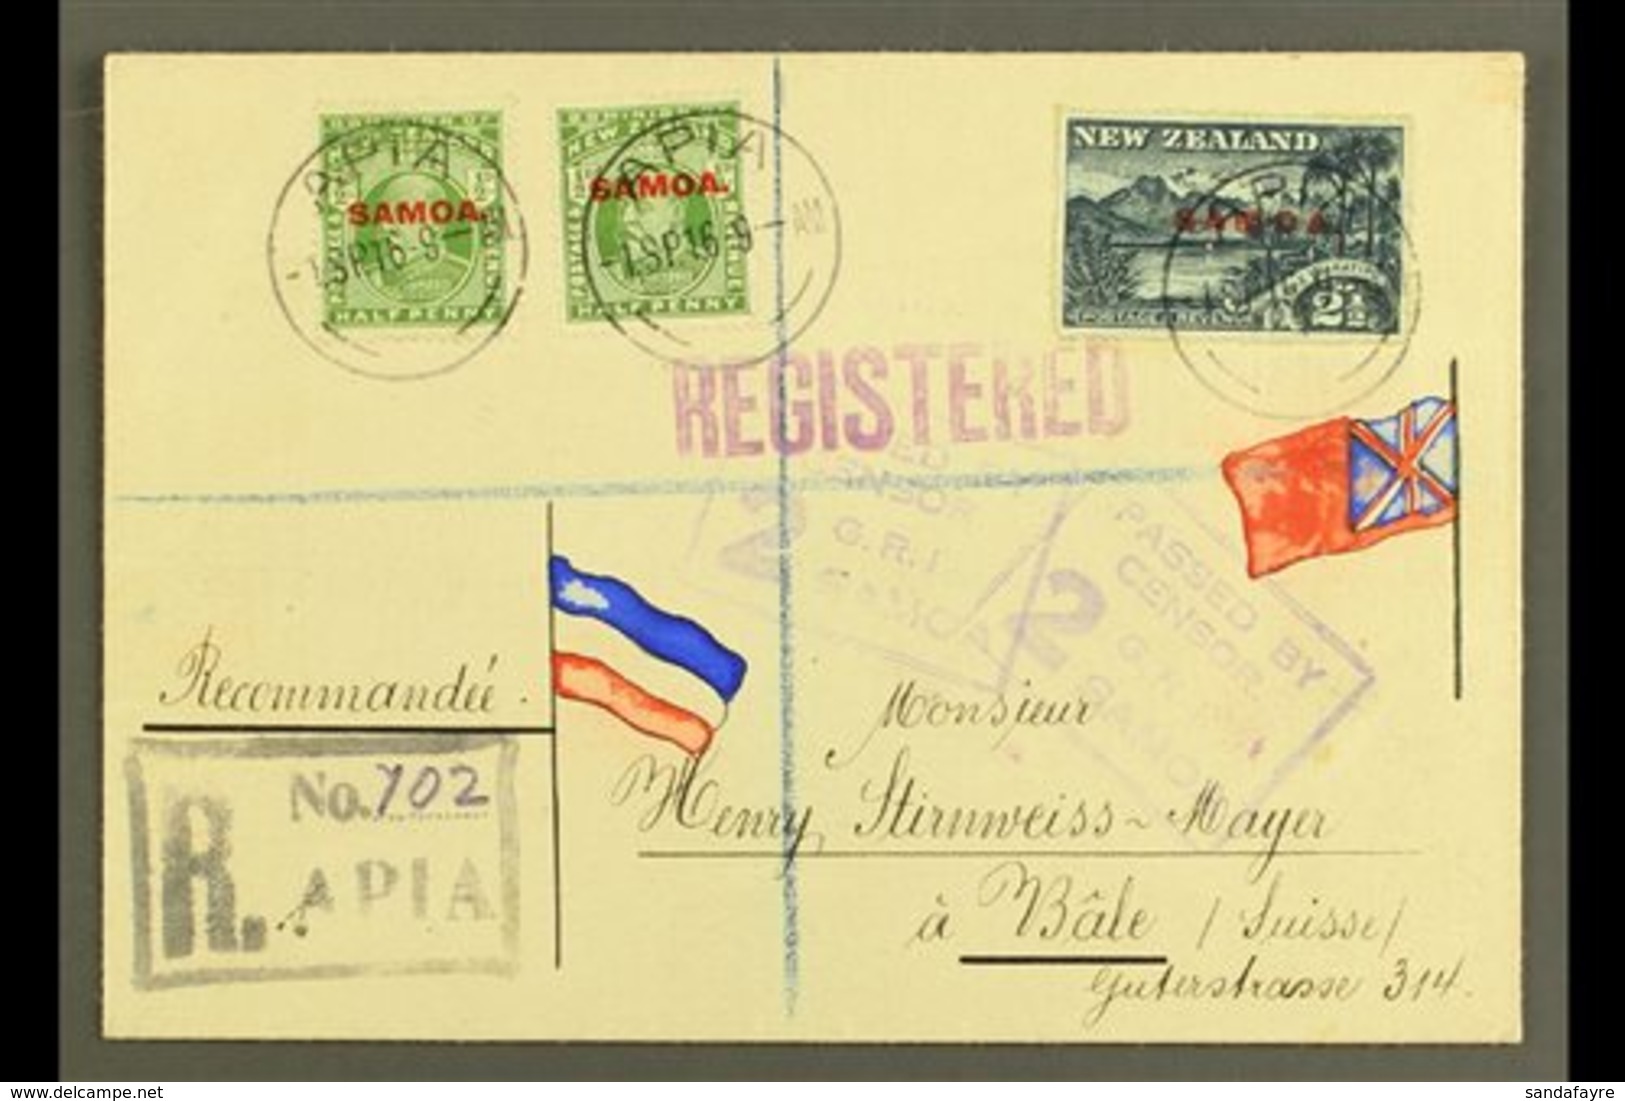 1916 Registered Cover To Switzerland, Franked ½d X2 & 2½d, SG 115, 118, Apia 01.09.16 Postmarks, Censor "2" Cachets Appl - Samoa